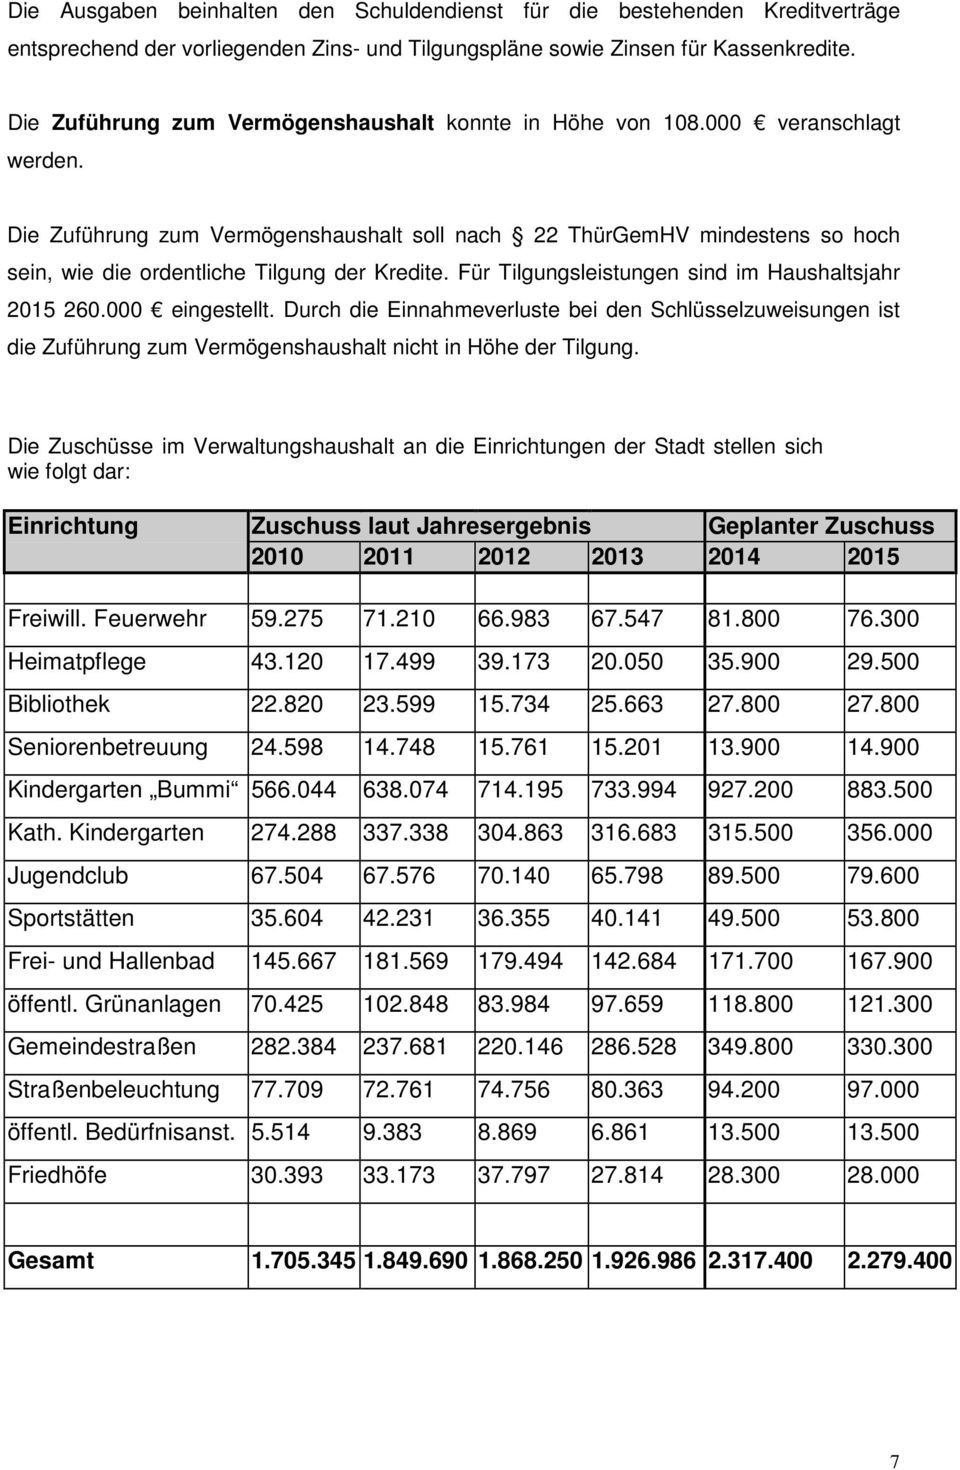 Die Zuführung zum Vermögenshaushalt soll nach 22 ThürGemHV mindestens so hoch sein, wie die ordentliche Tilgung der Kredite. Für Tilgungsleistungen sind im Haushaltsjahr 2015 260.000 eingestellt.